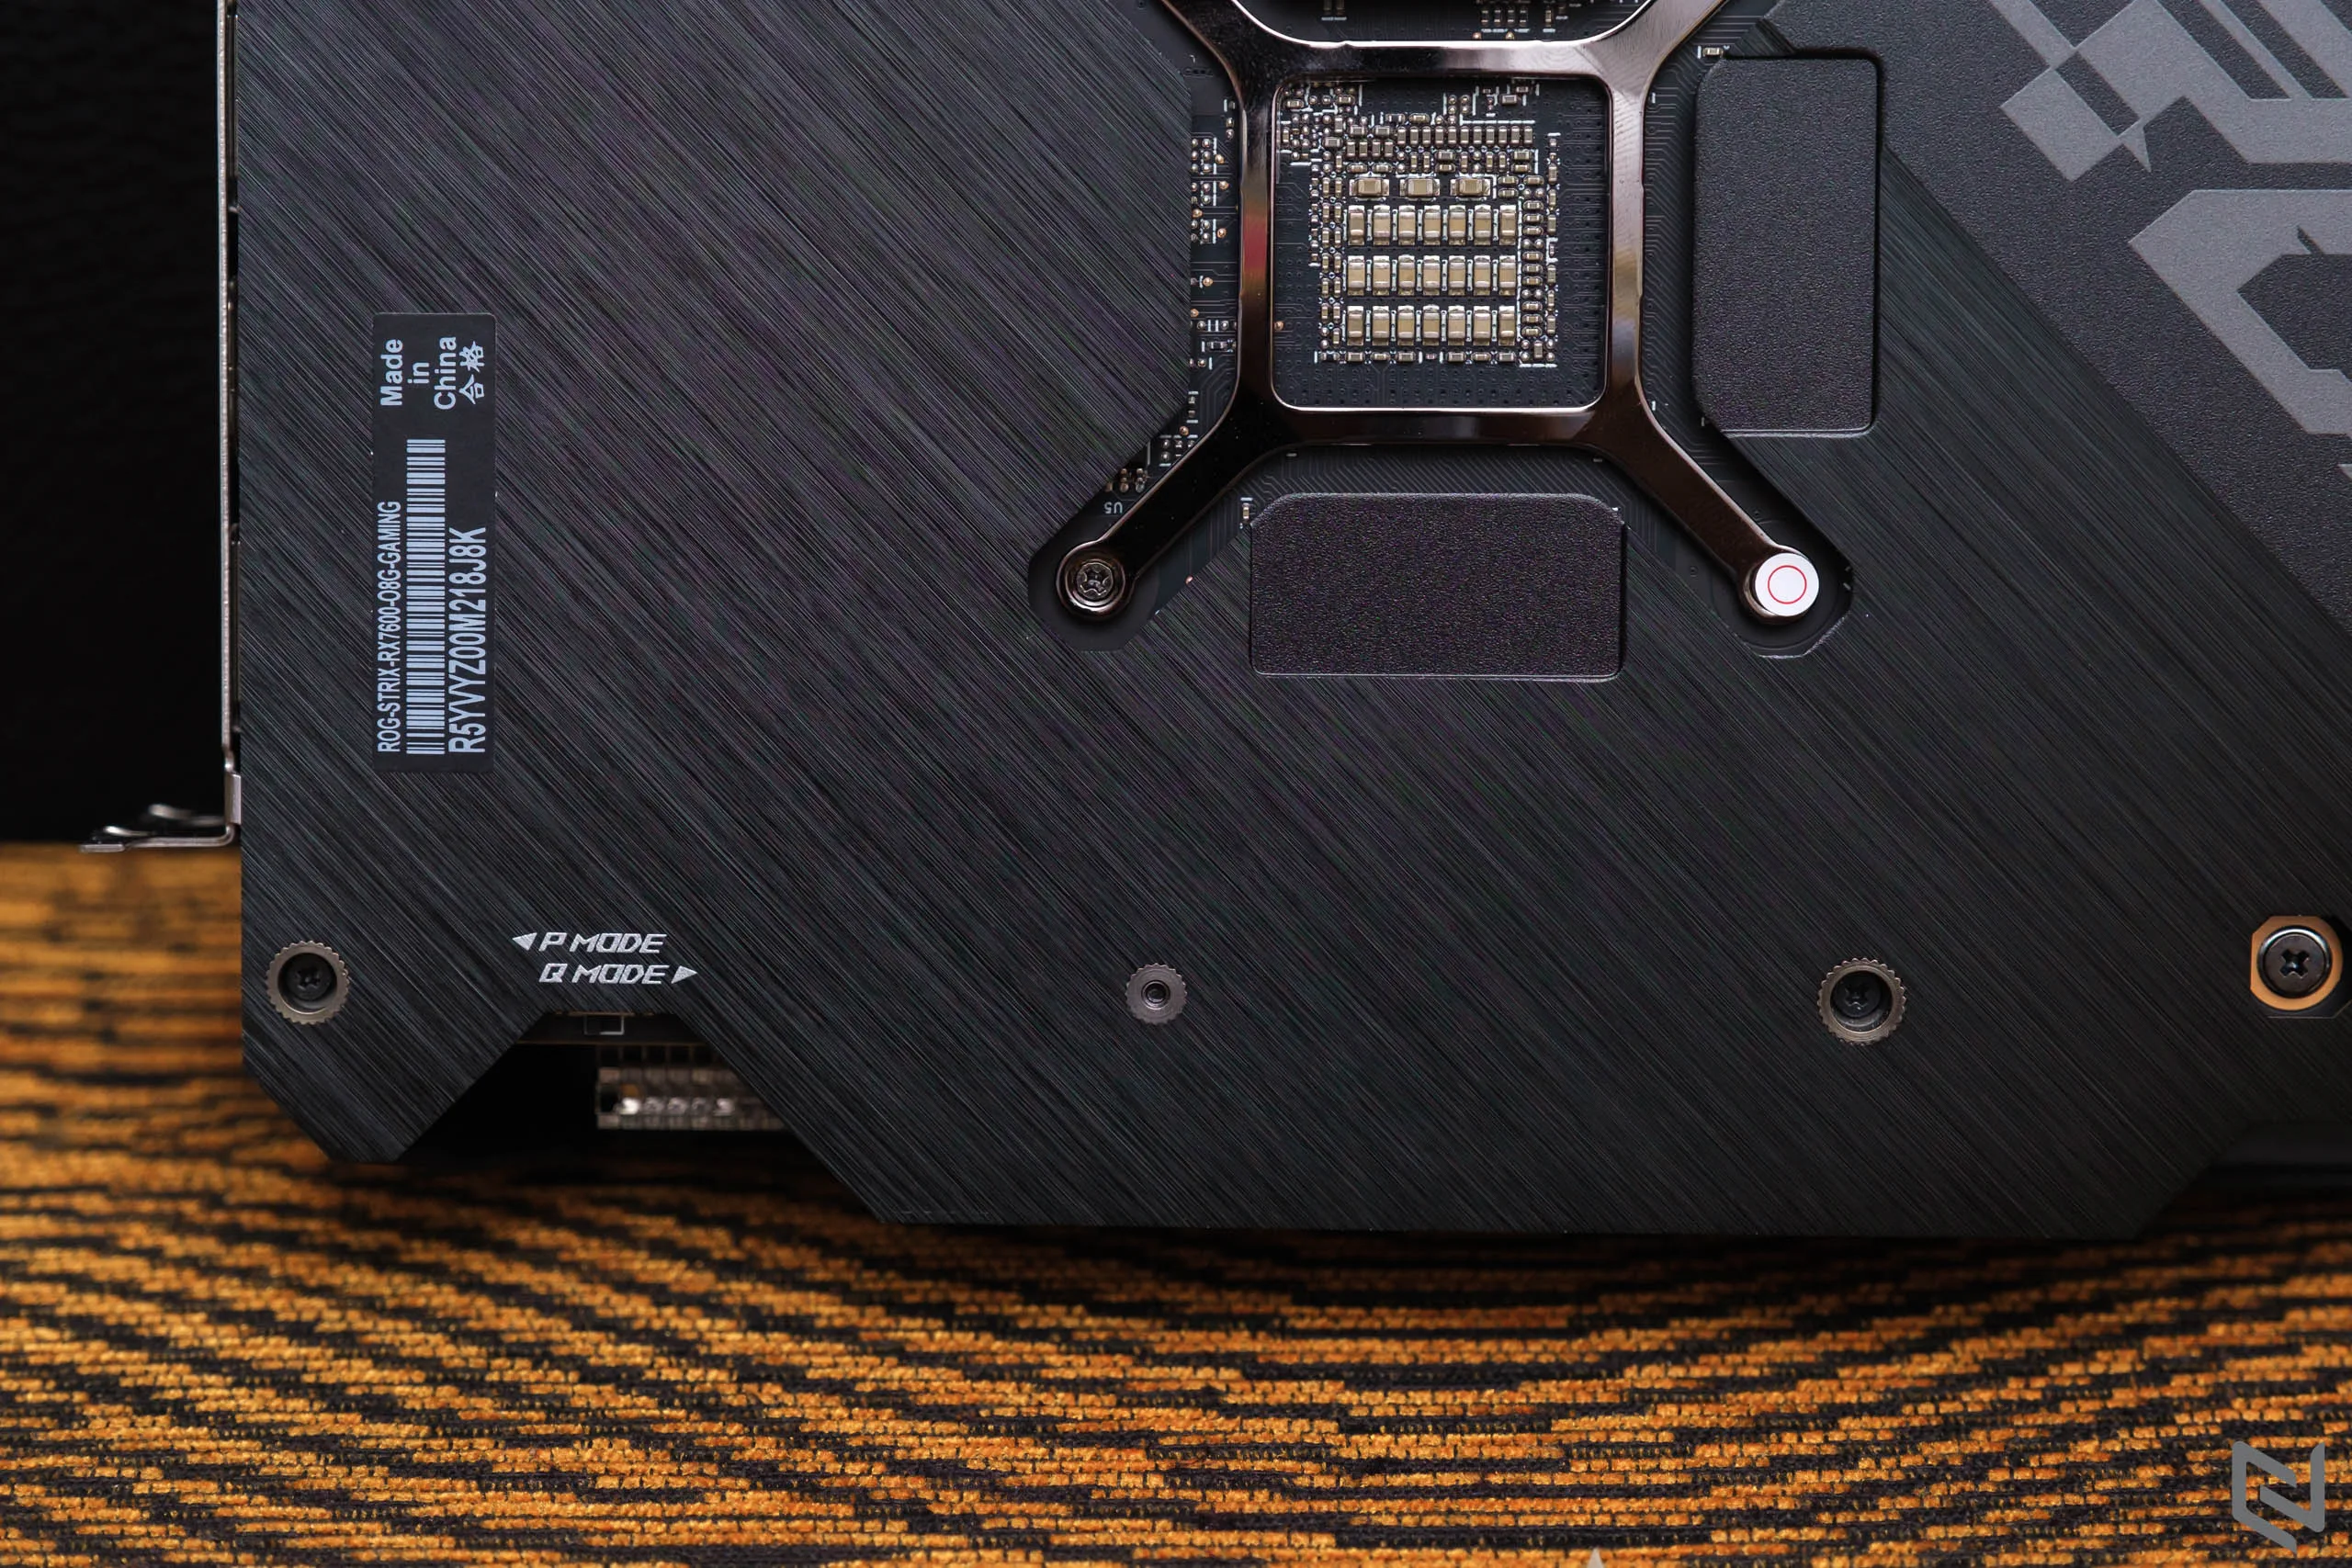 Trên tay card đồ hoạ ASUS ROG Strix AMD Radeon RX 7600 OC 8GB: Thiết kế đẹp, kiến trúc RDNA3 và khả năng tản nhiệt tối ưu